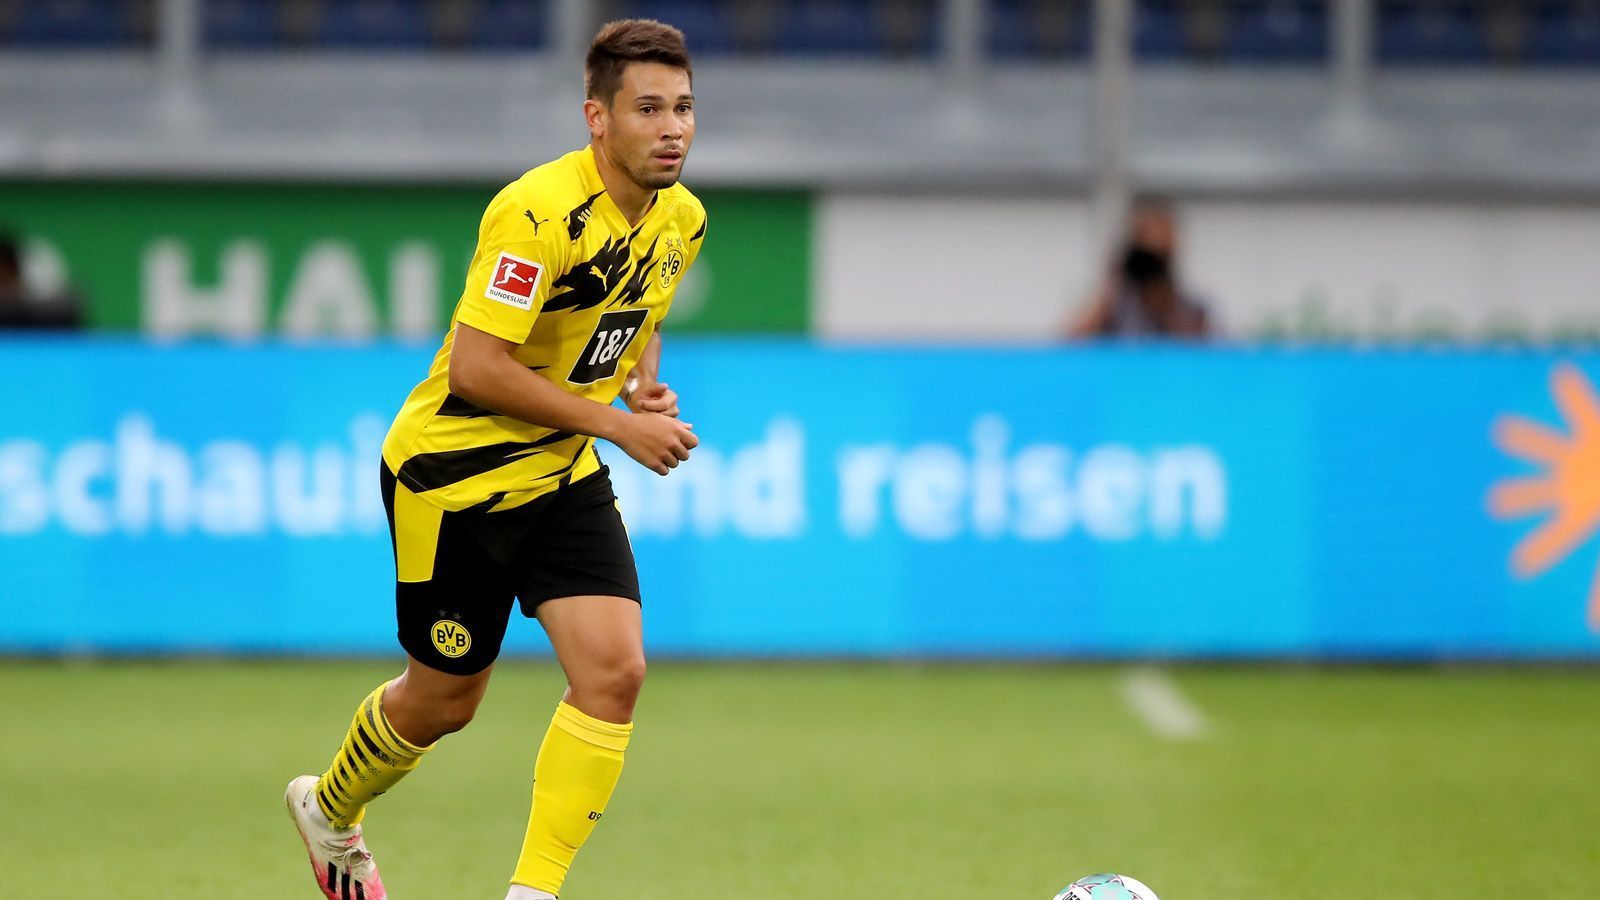 
                <strong>Raphael Guerreiro</strong><br>
                Außenbahnspieler Raphael Guerreiro hat einen gültigen Vertrag in Dortmund bis Ende Juni . Ob er darüber hinaus eine Zukunft in Dortmund hat, wird sich in den nächsten Wochen zeigen. Der BVB möchte mit dem Portugiesen verlängern, eine Einigung gab es bislang nicht.
              